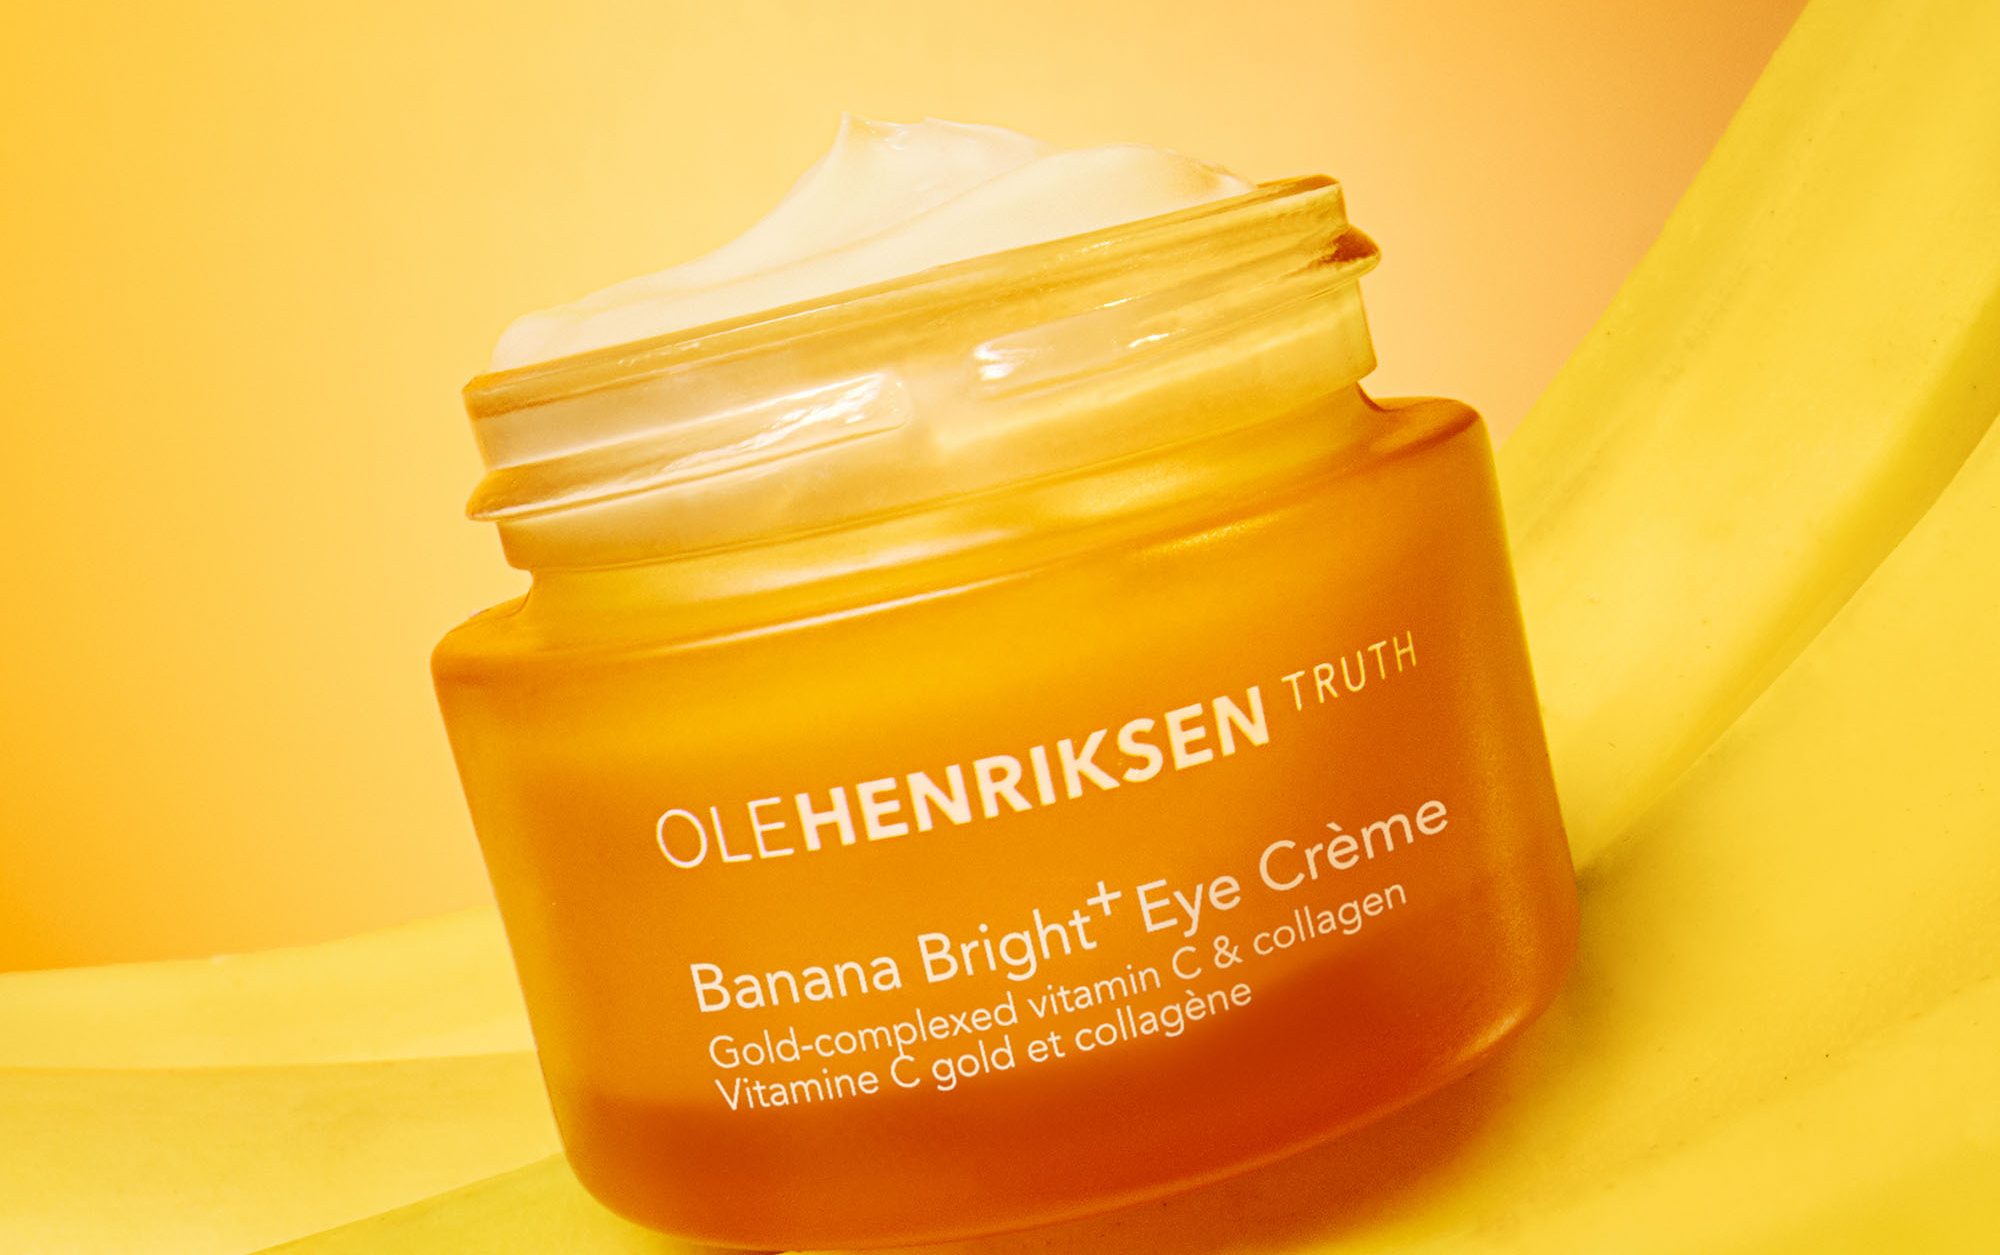 Ole Henriksen introduces BRB skin care line